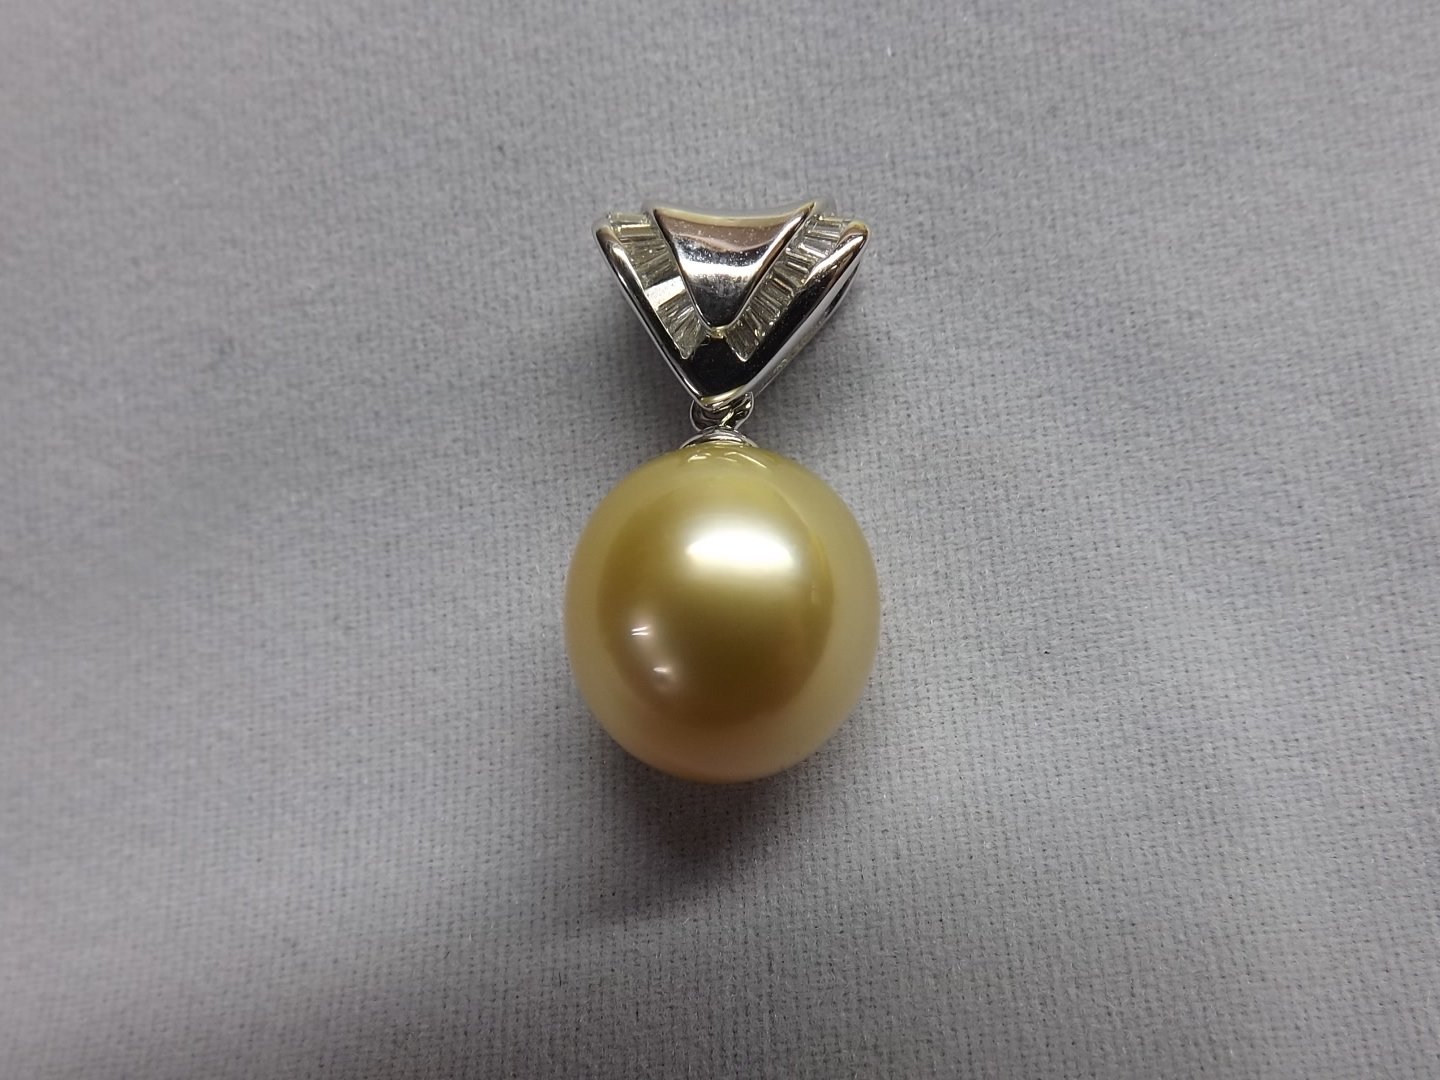 【メーカー直送】 K18WG ペンダント トップ 南洋真珠 ダイヤモンド #17 南洋パール 真珠 パール Pearl ダイヤ Diamond